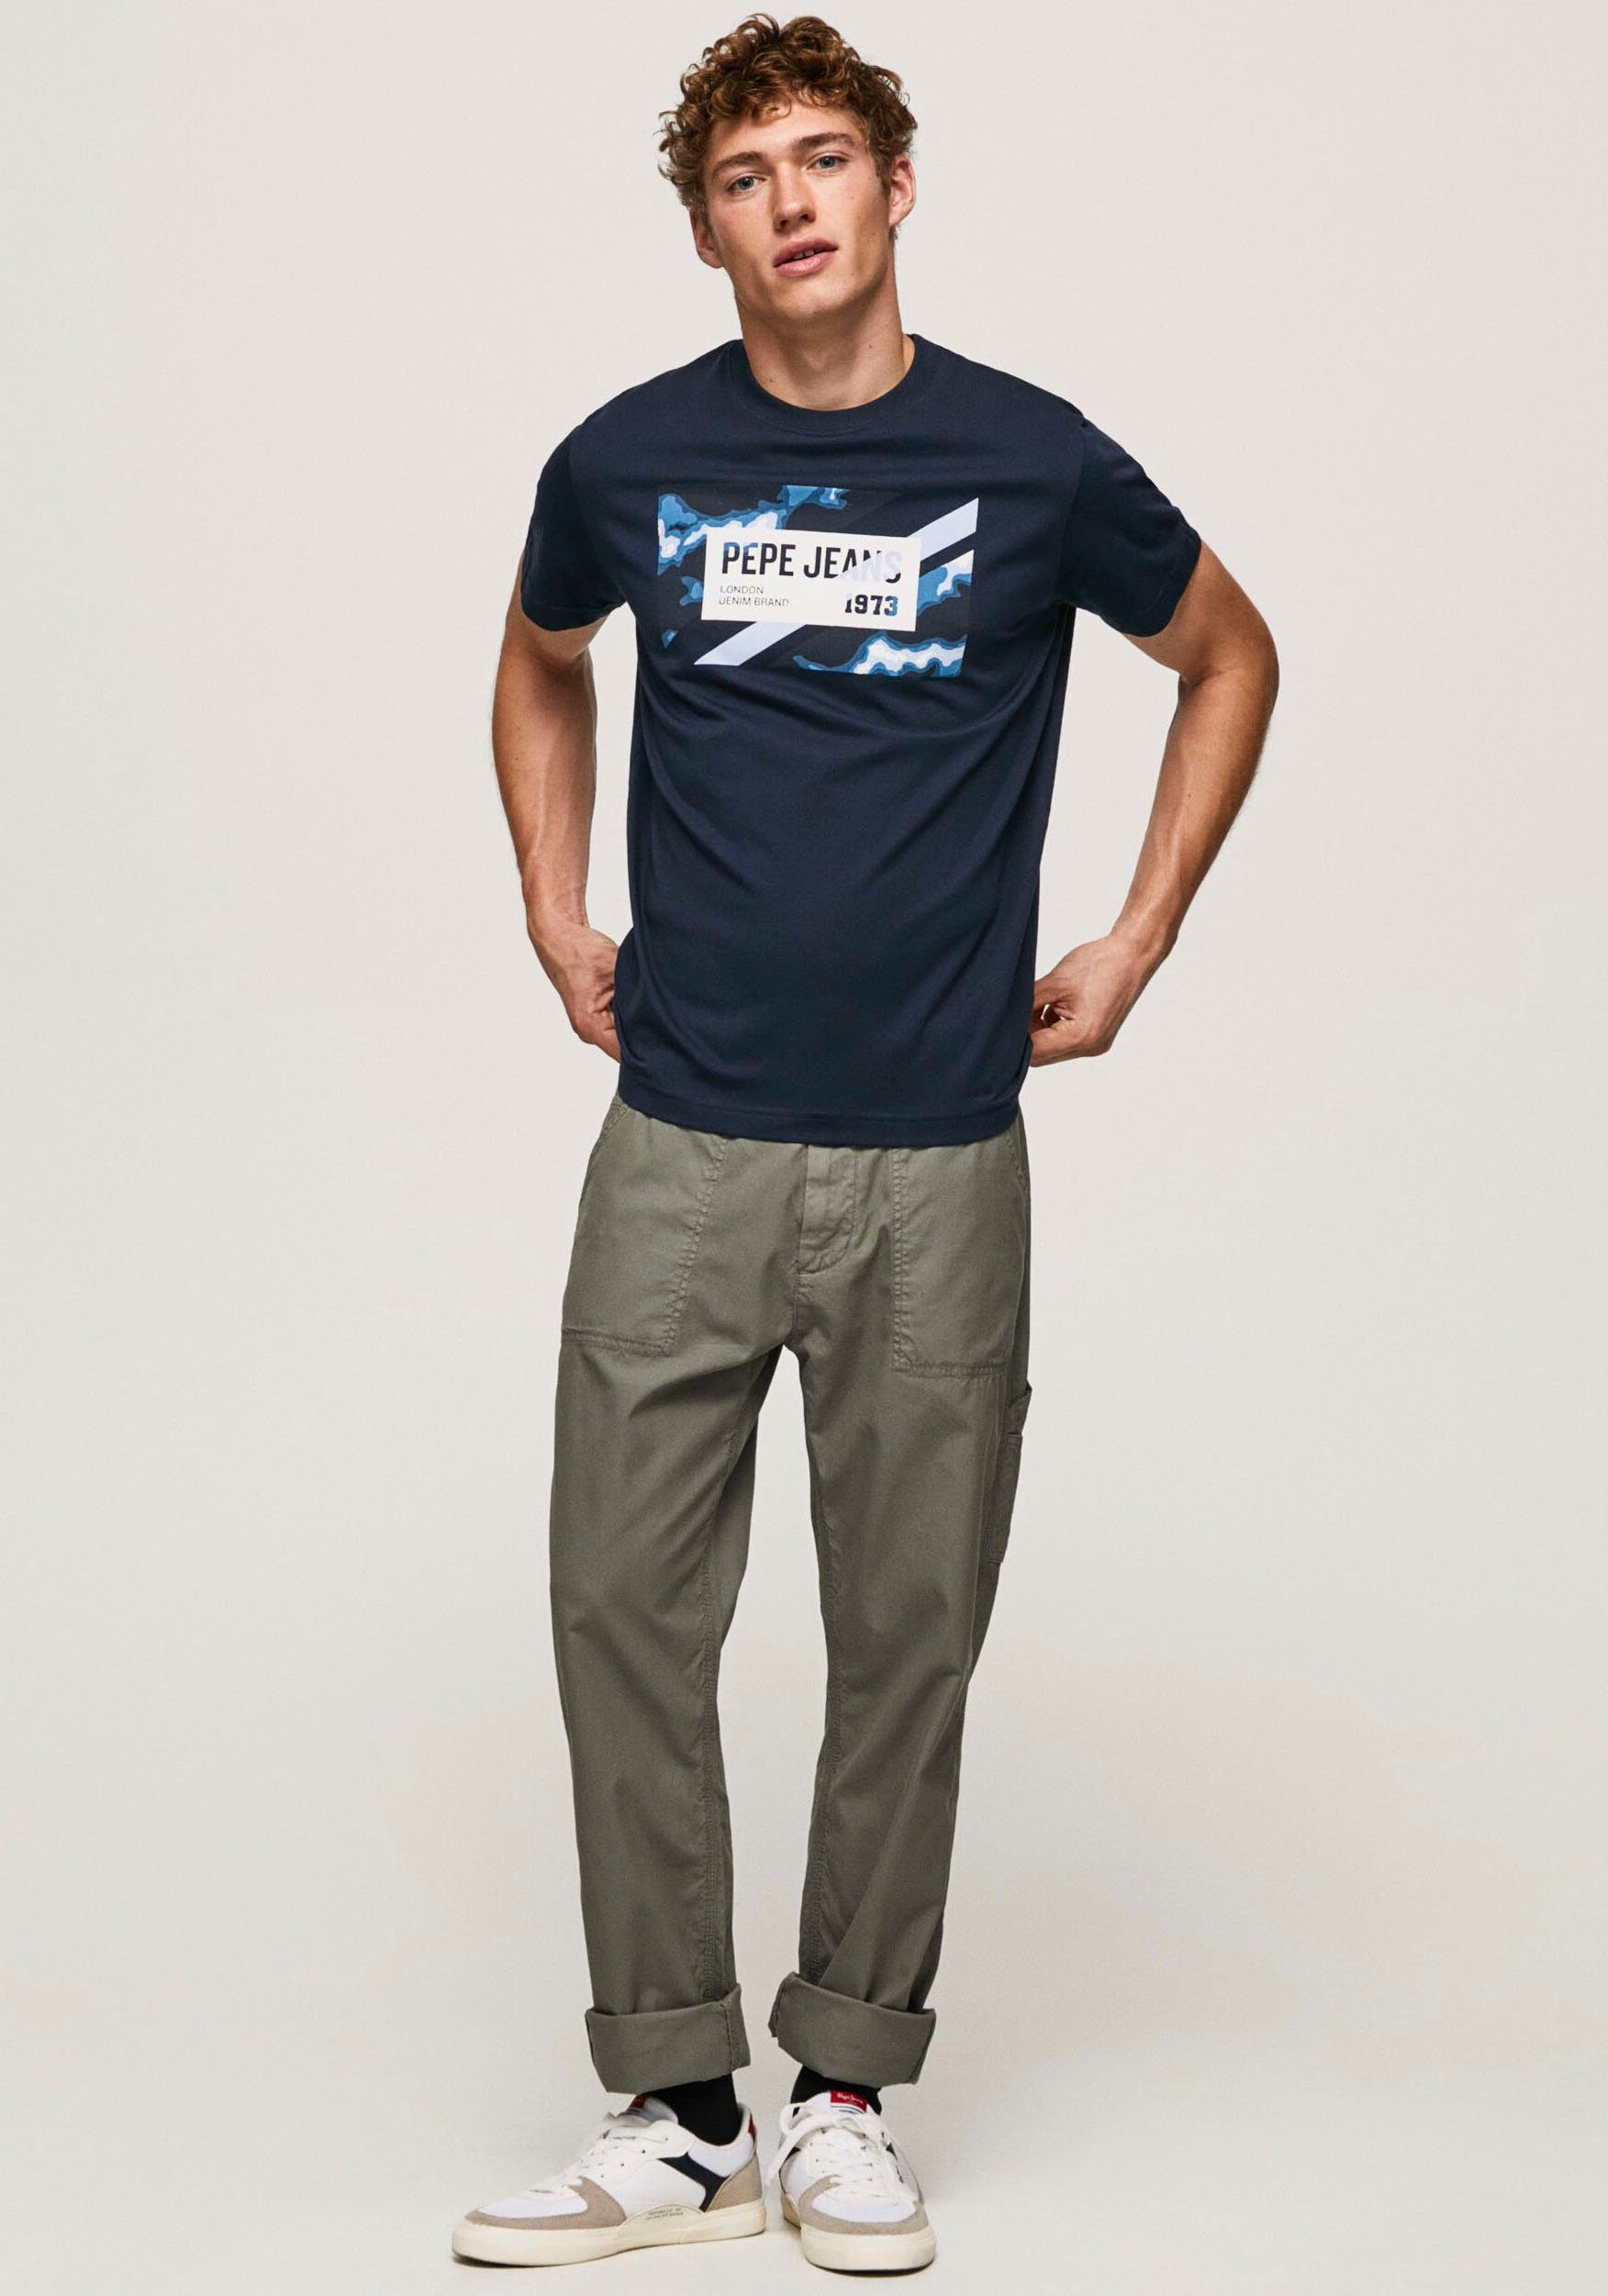 OTTO shop Pepe in online | T-shirt Jeans de